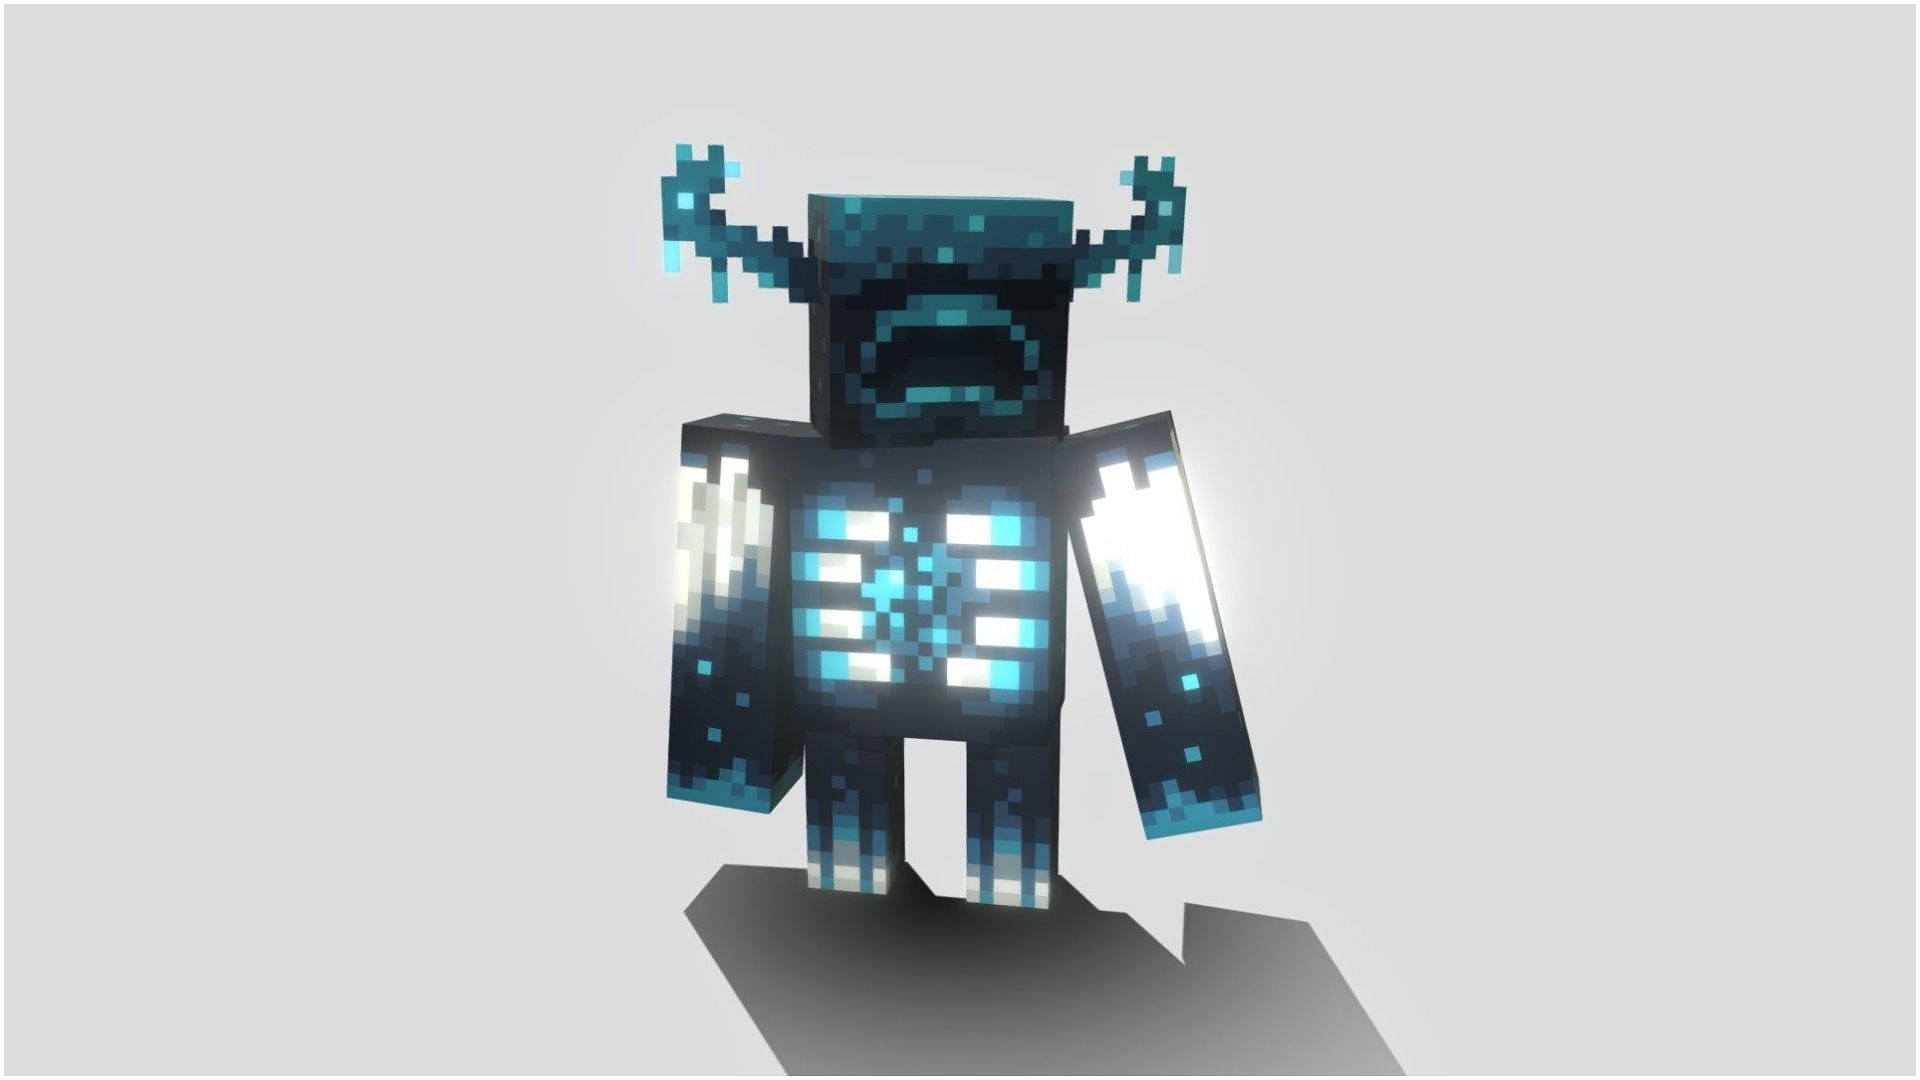 The Warden in Minecraft (Image via Sketchfab/BeckBroEYTube)